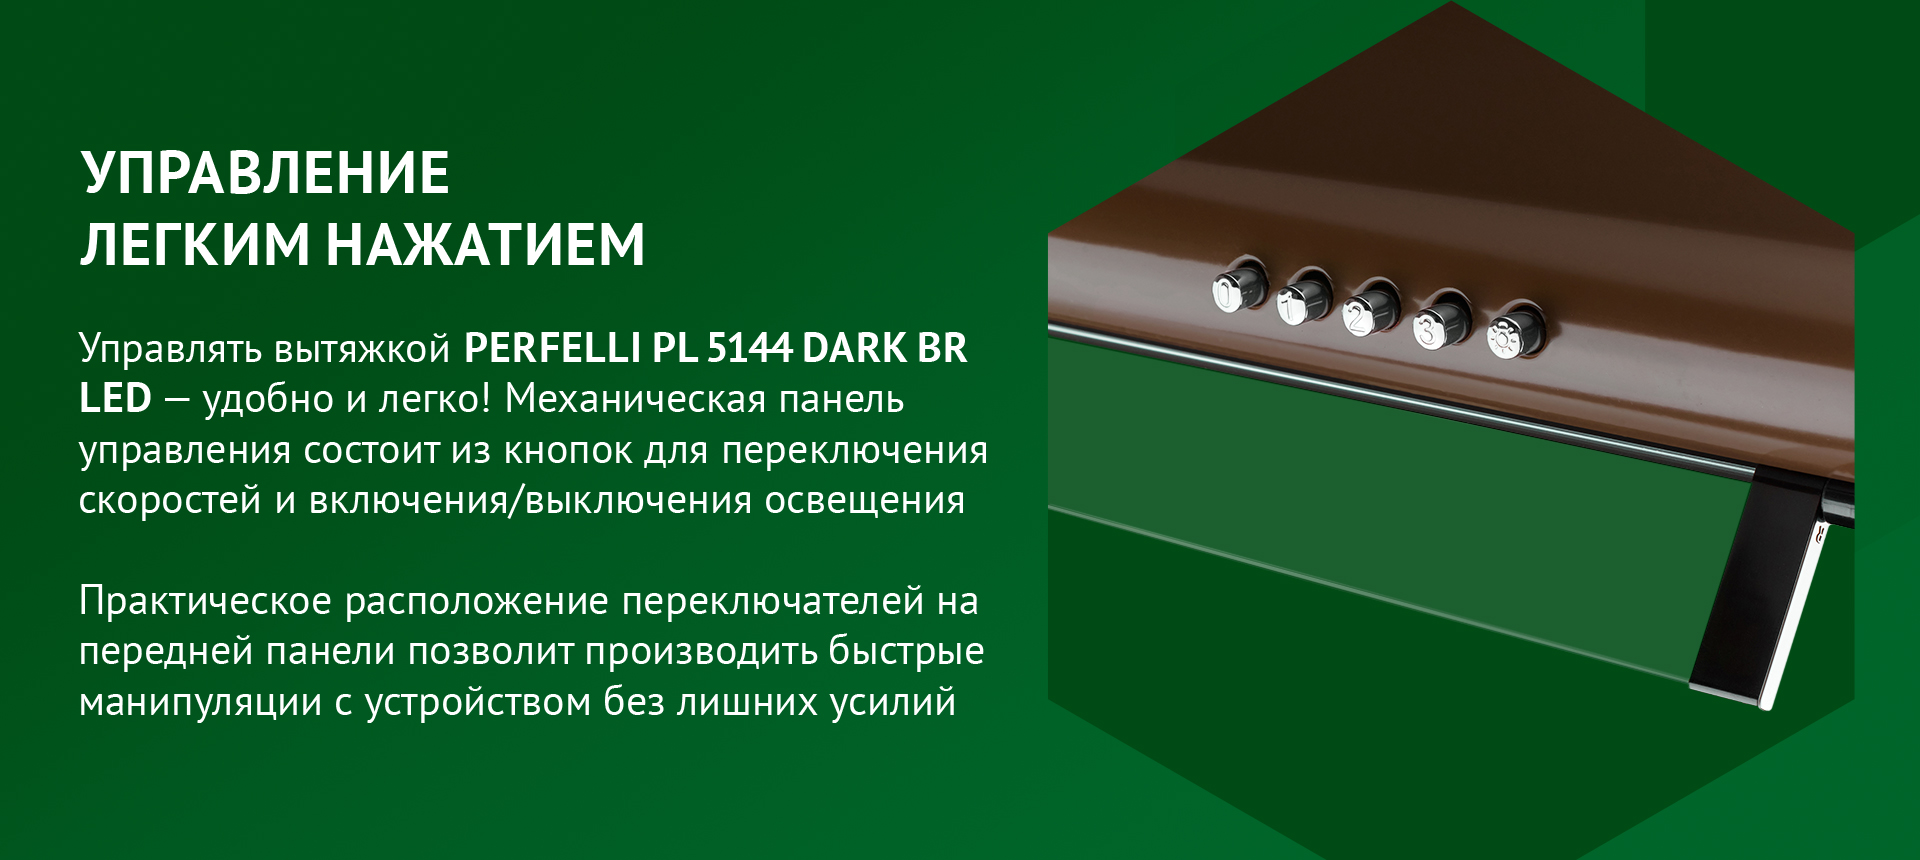 Управлять вытяжкой PERFELLI PL 5144 DARK BR LED – удобно и легко! Механическая панель управления состоит из кнопок для переключения скоростей и включения/выключения освещения. Практическое расположение переключателей на передней панели позволит производить быстрые манипуляции с устройством без лишних усилий